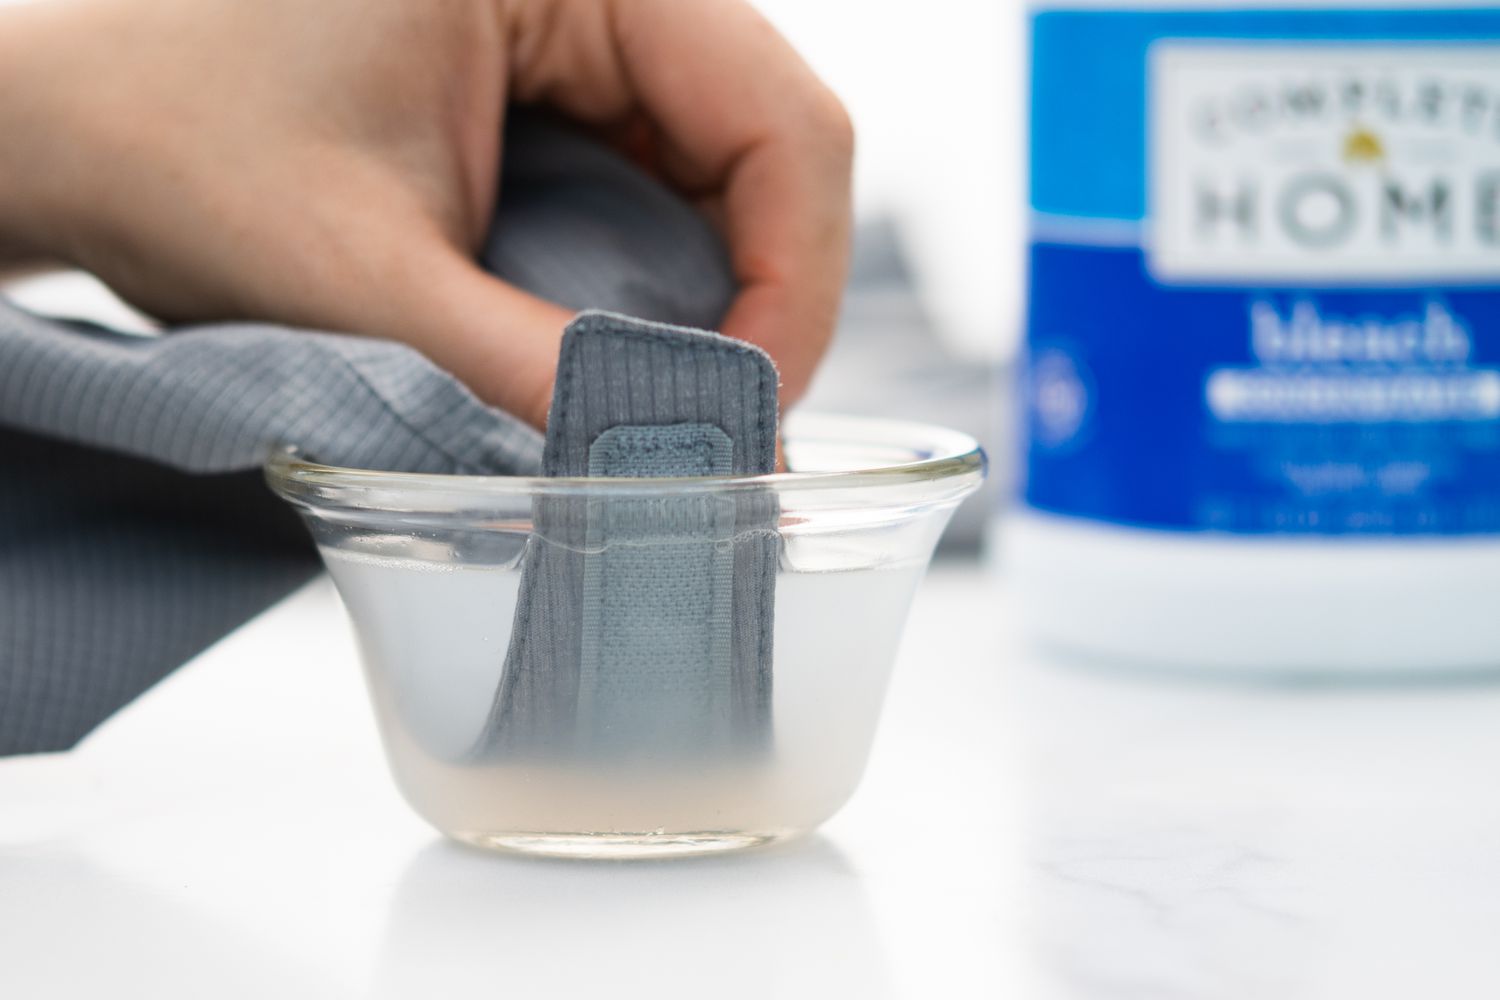 Klettverschluss von waschbarem Kleidungsstück in kleine Schüssel mit Wasser und sauerstoffbasiertem Bleichmittel getaucht